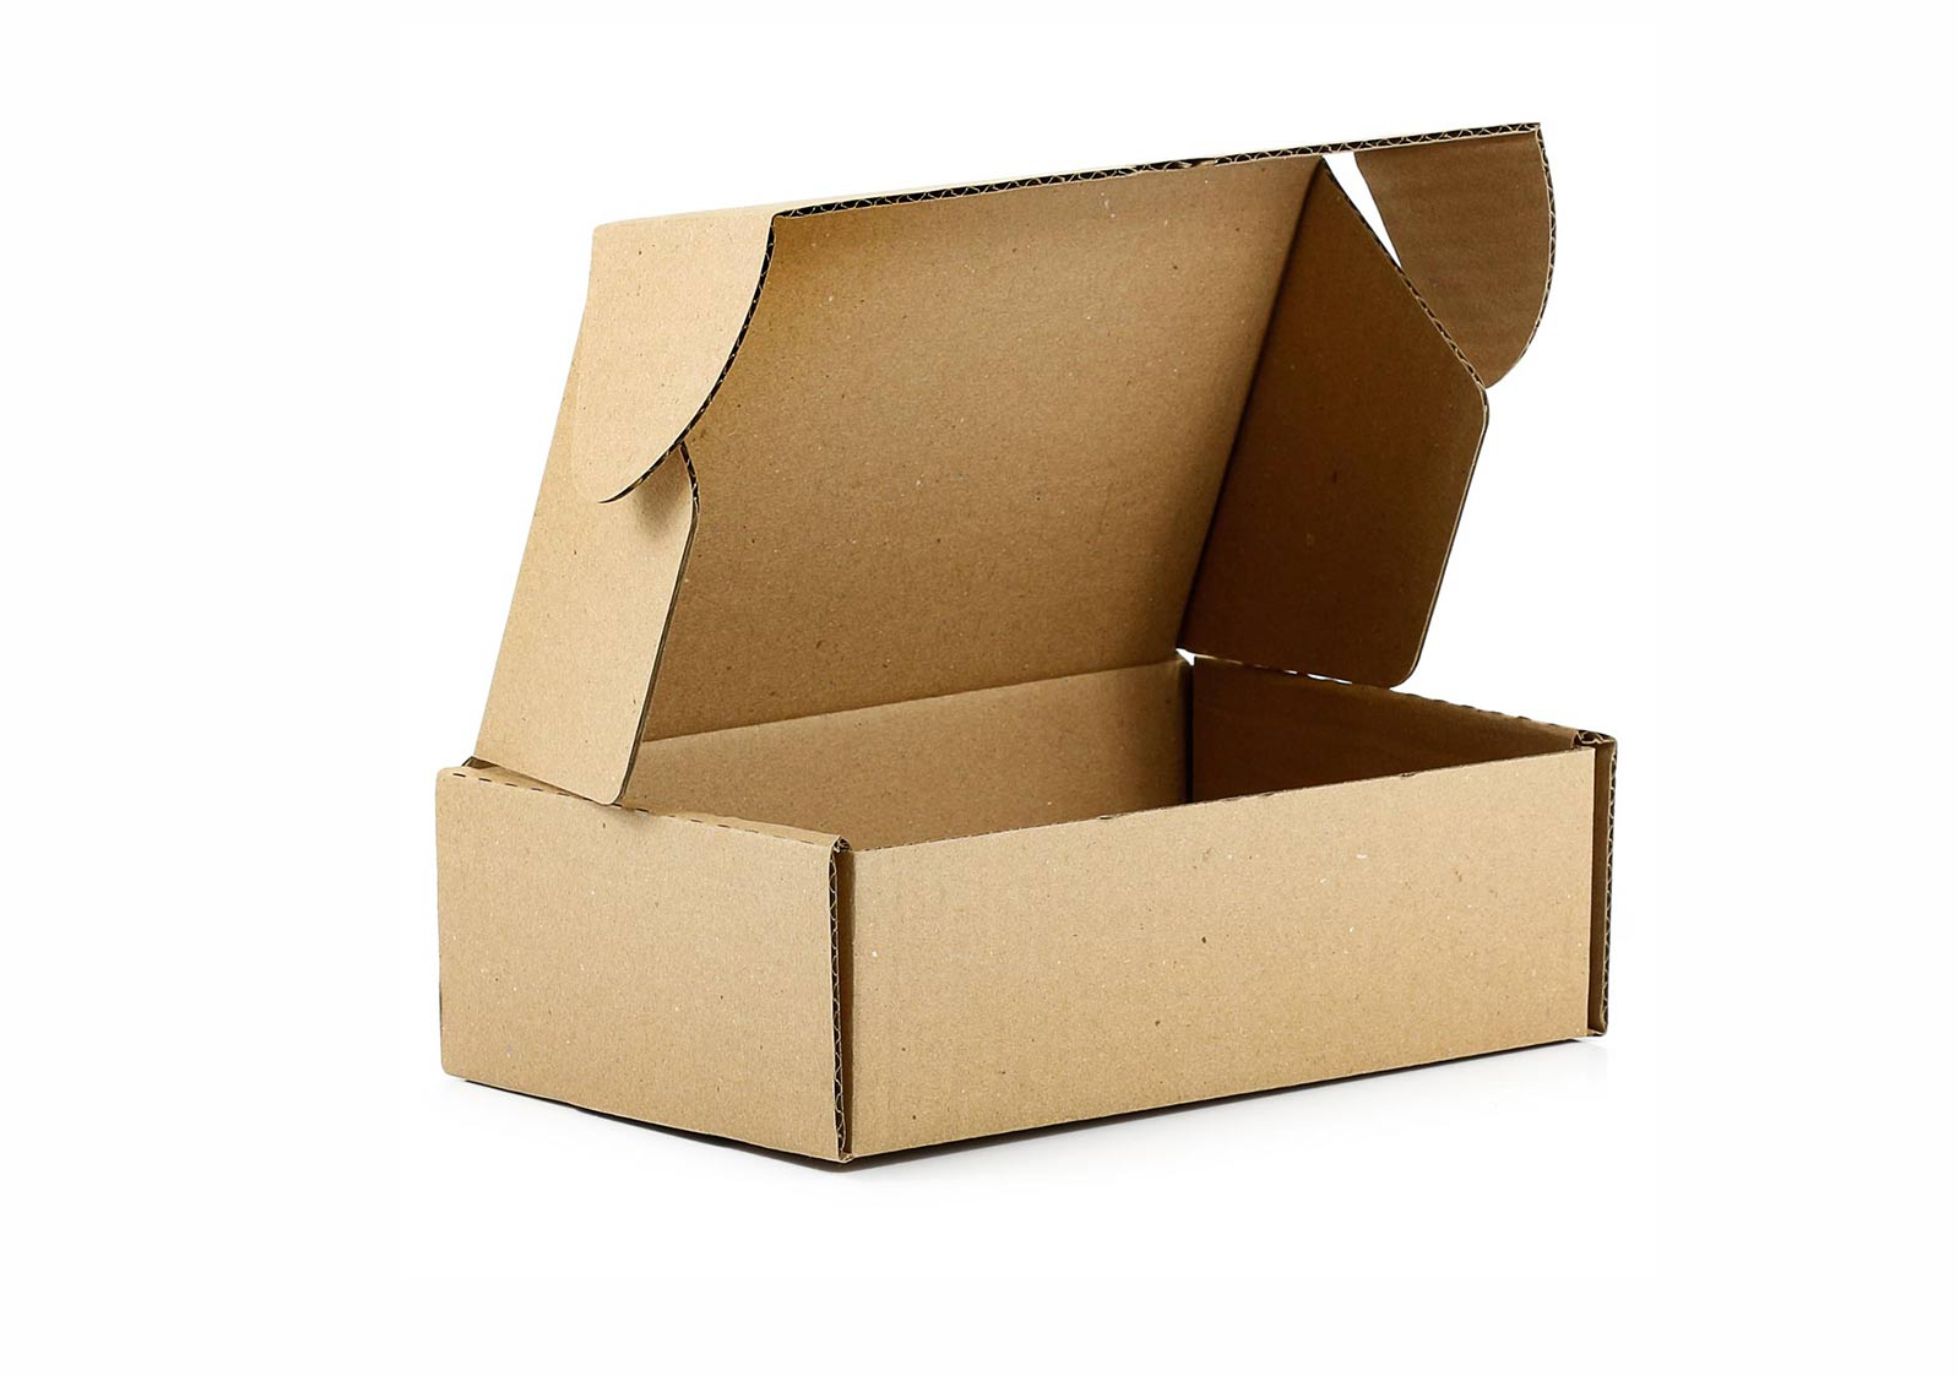 Caixa de papelão cesta de natal - 4161-1263 - FENIX